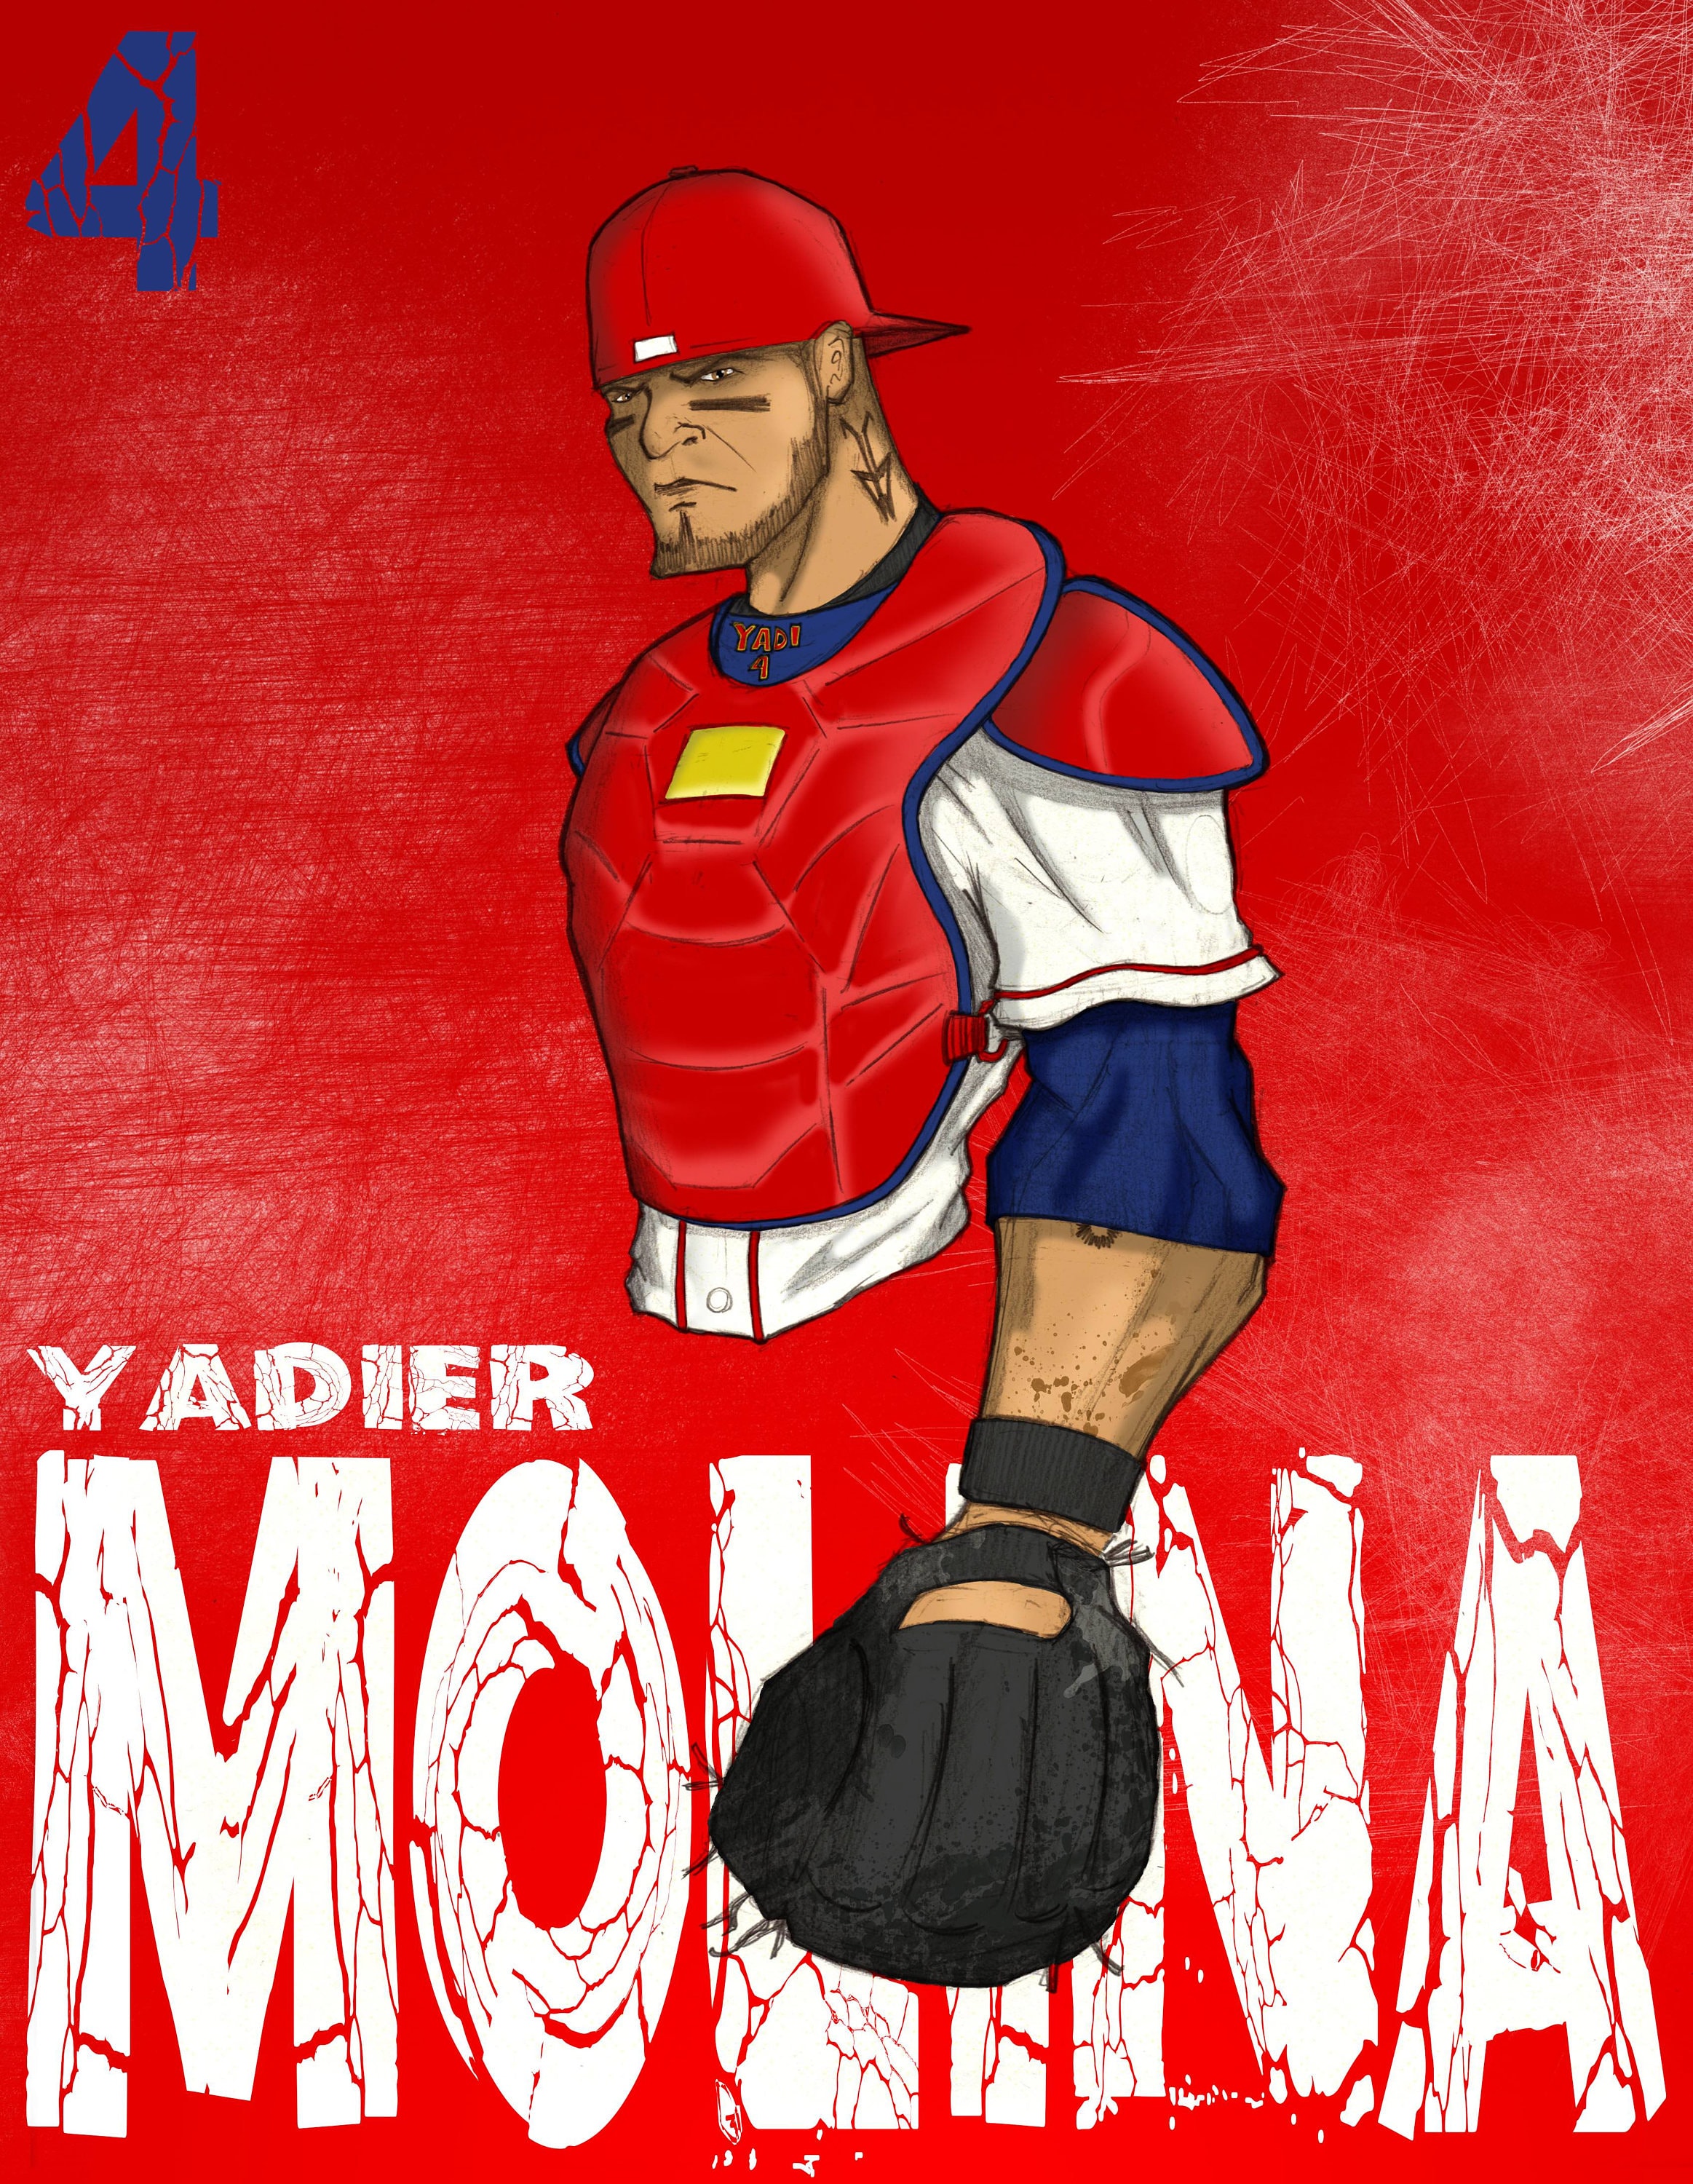 Yadier Molina Poster